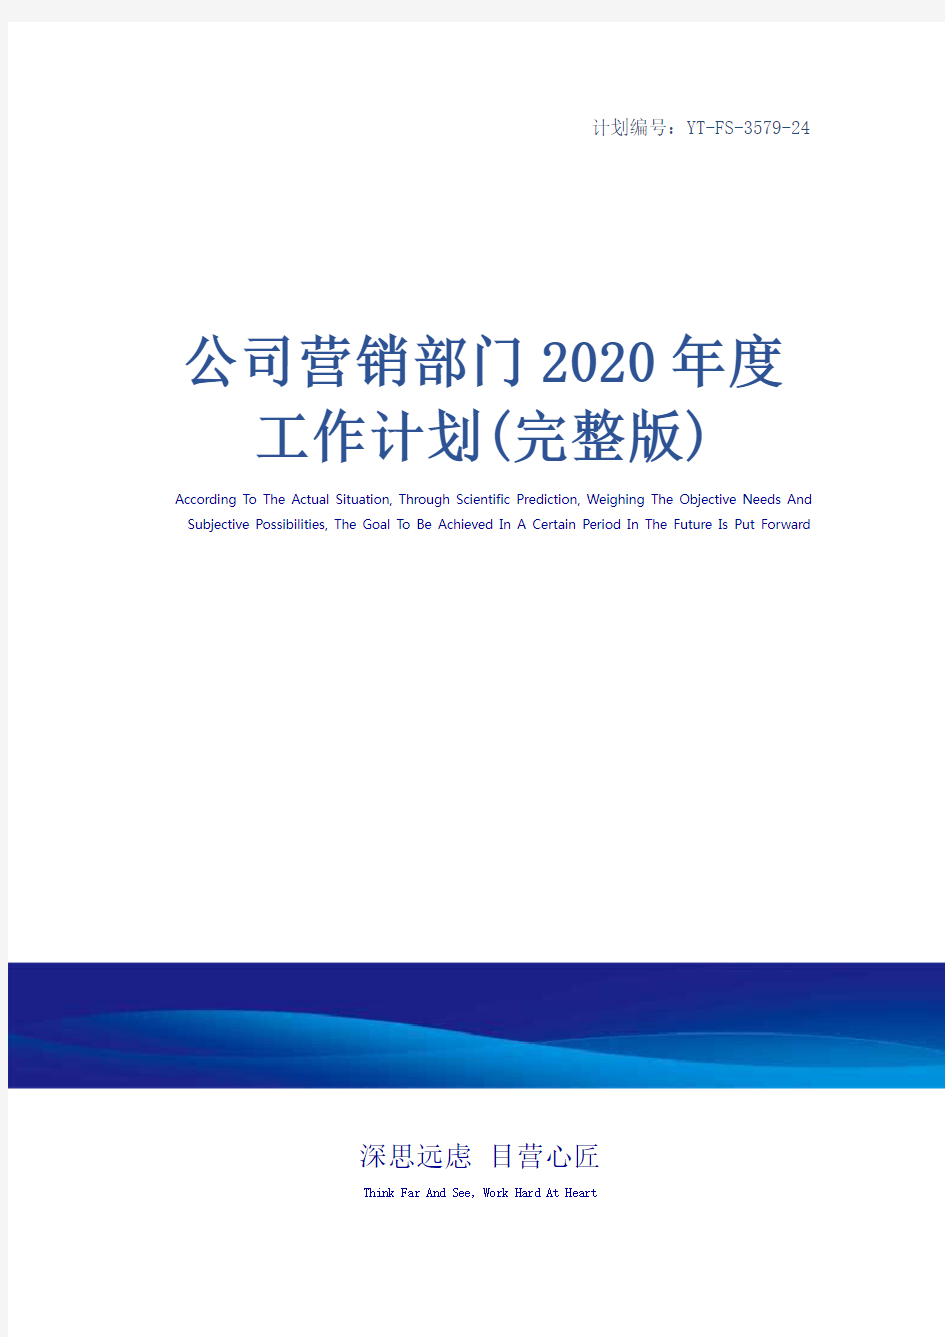 公司营销部门2020年度工作计划(完整版)